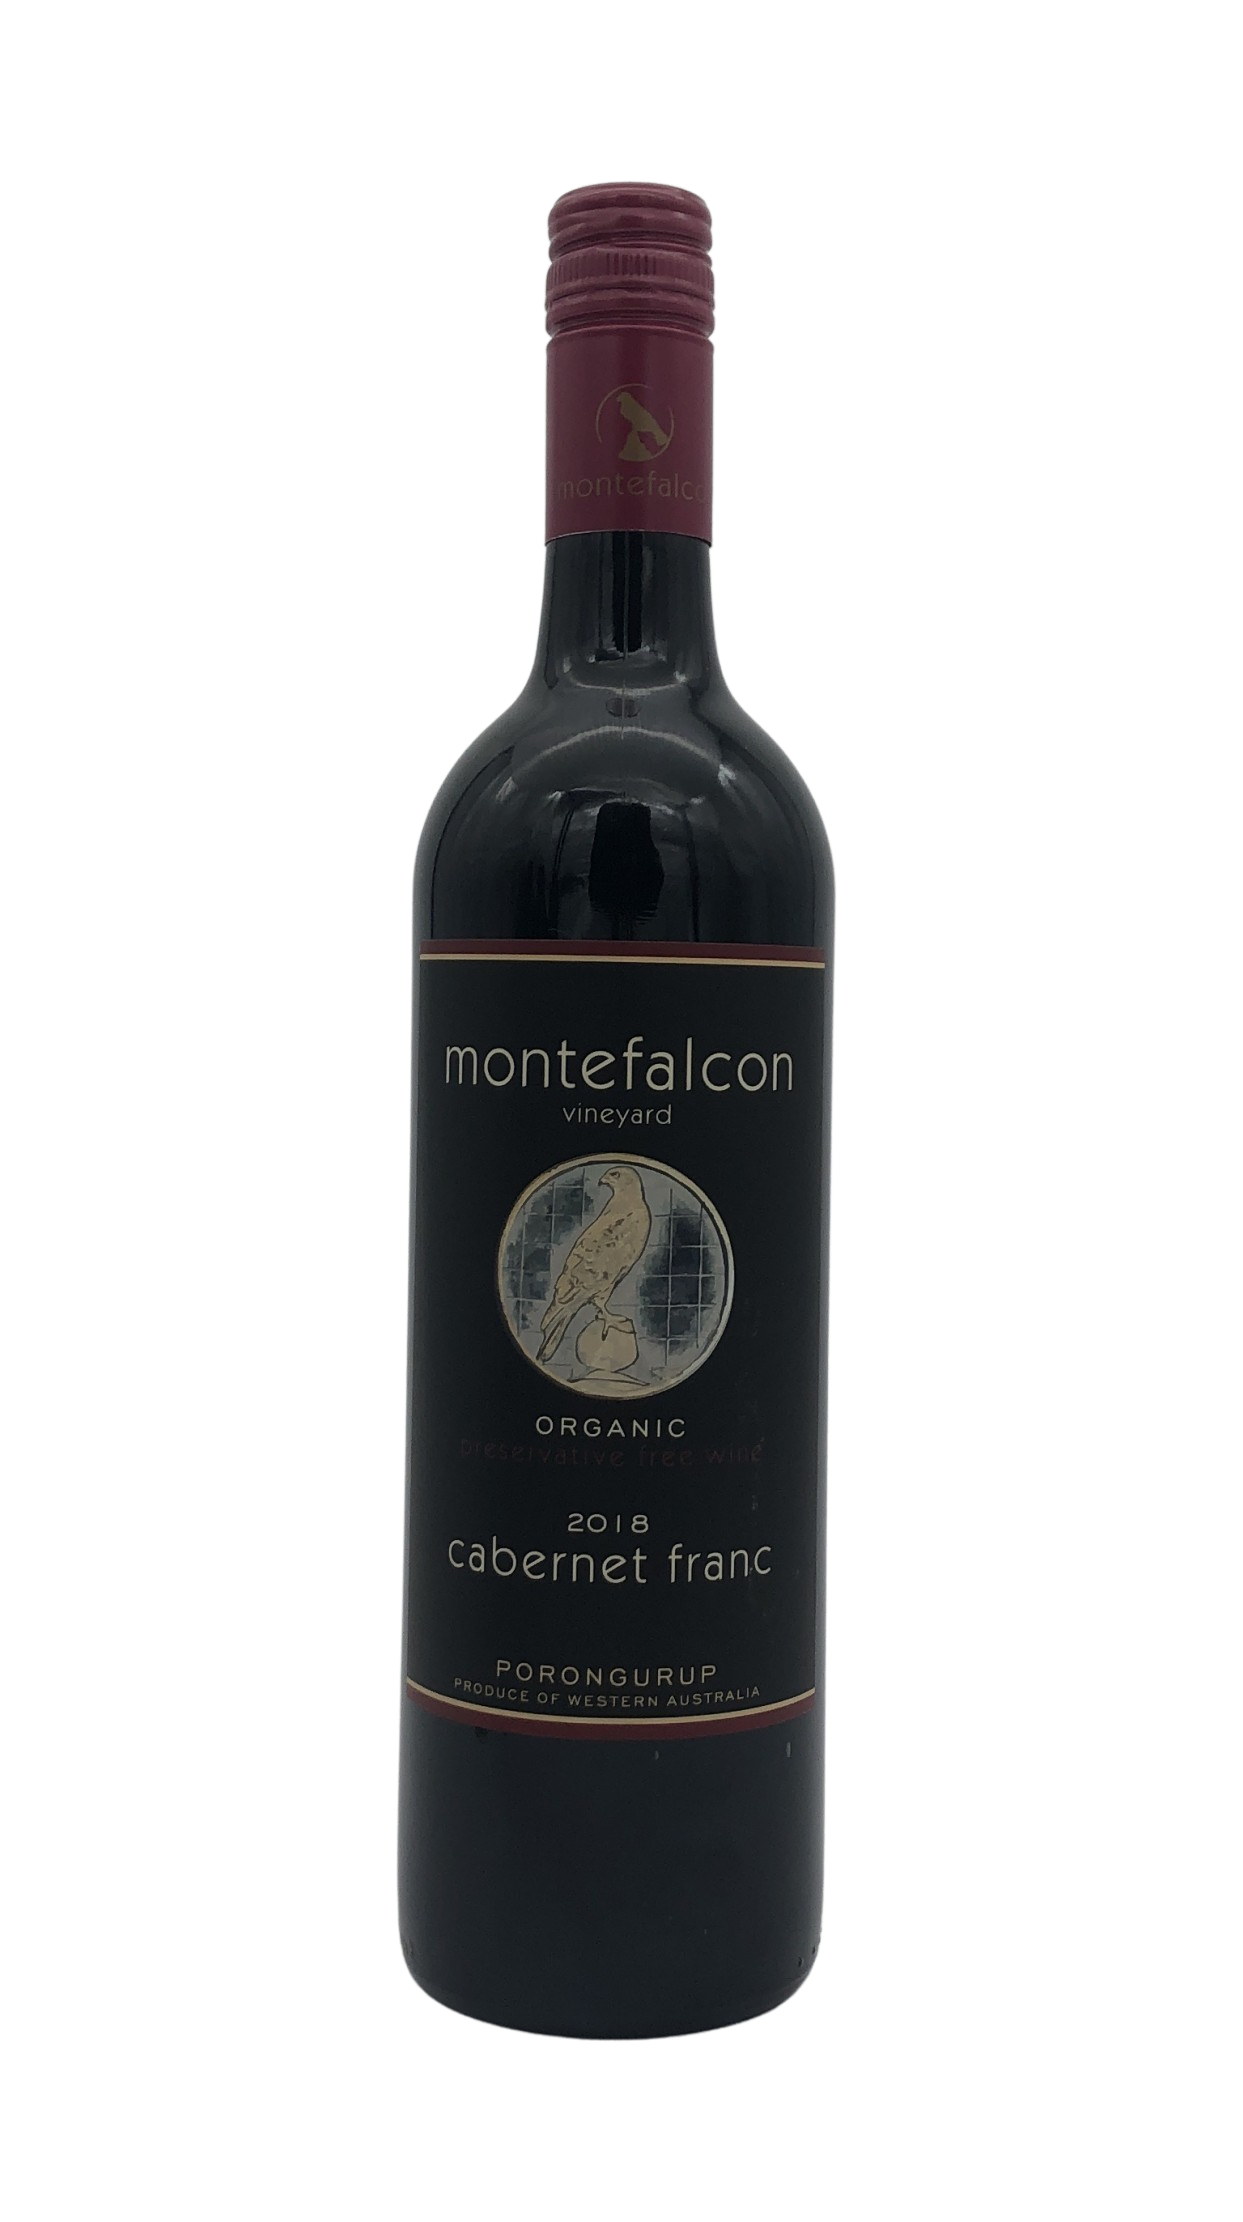 Montefalcon Cabernet Franc